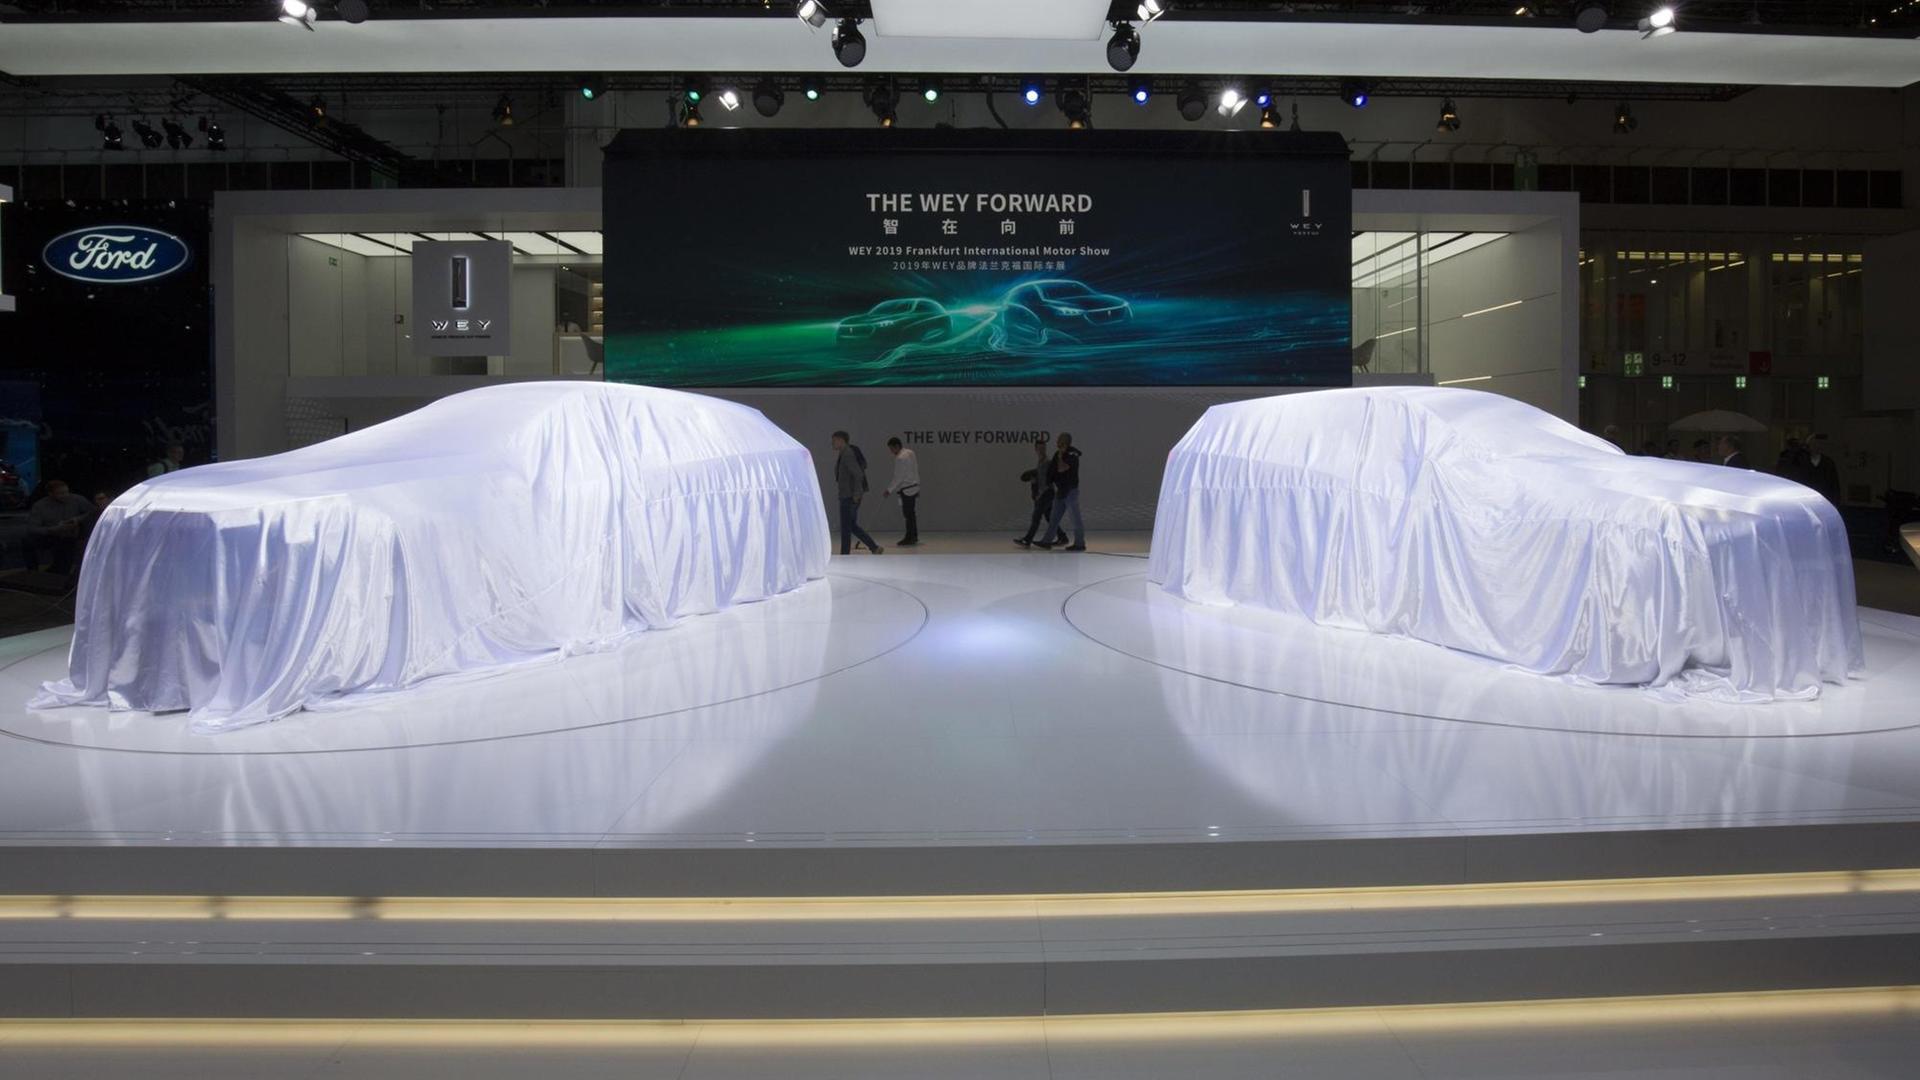 Verhüllte Autos stehen auf dem Präsentationsstand des chinesischen Unternehmens Great Wall Group auf der Internationalen Automobil-Ausstellung (IAA) 2019 in Frankfurt am Main